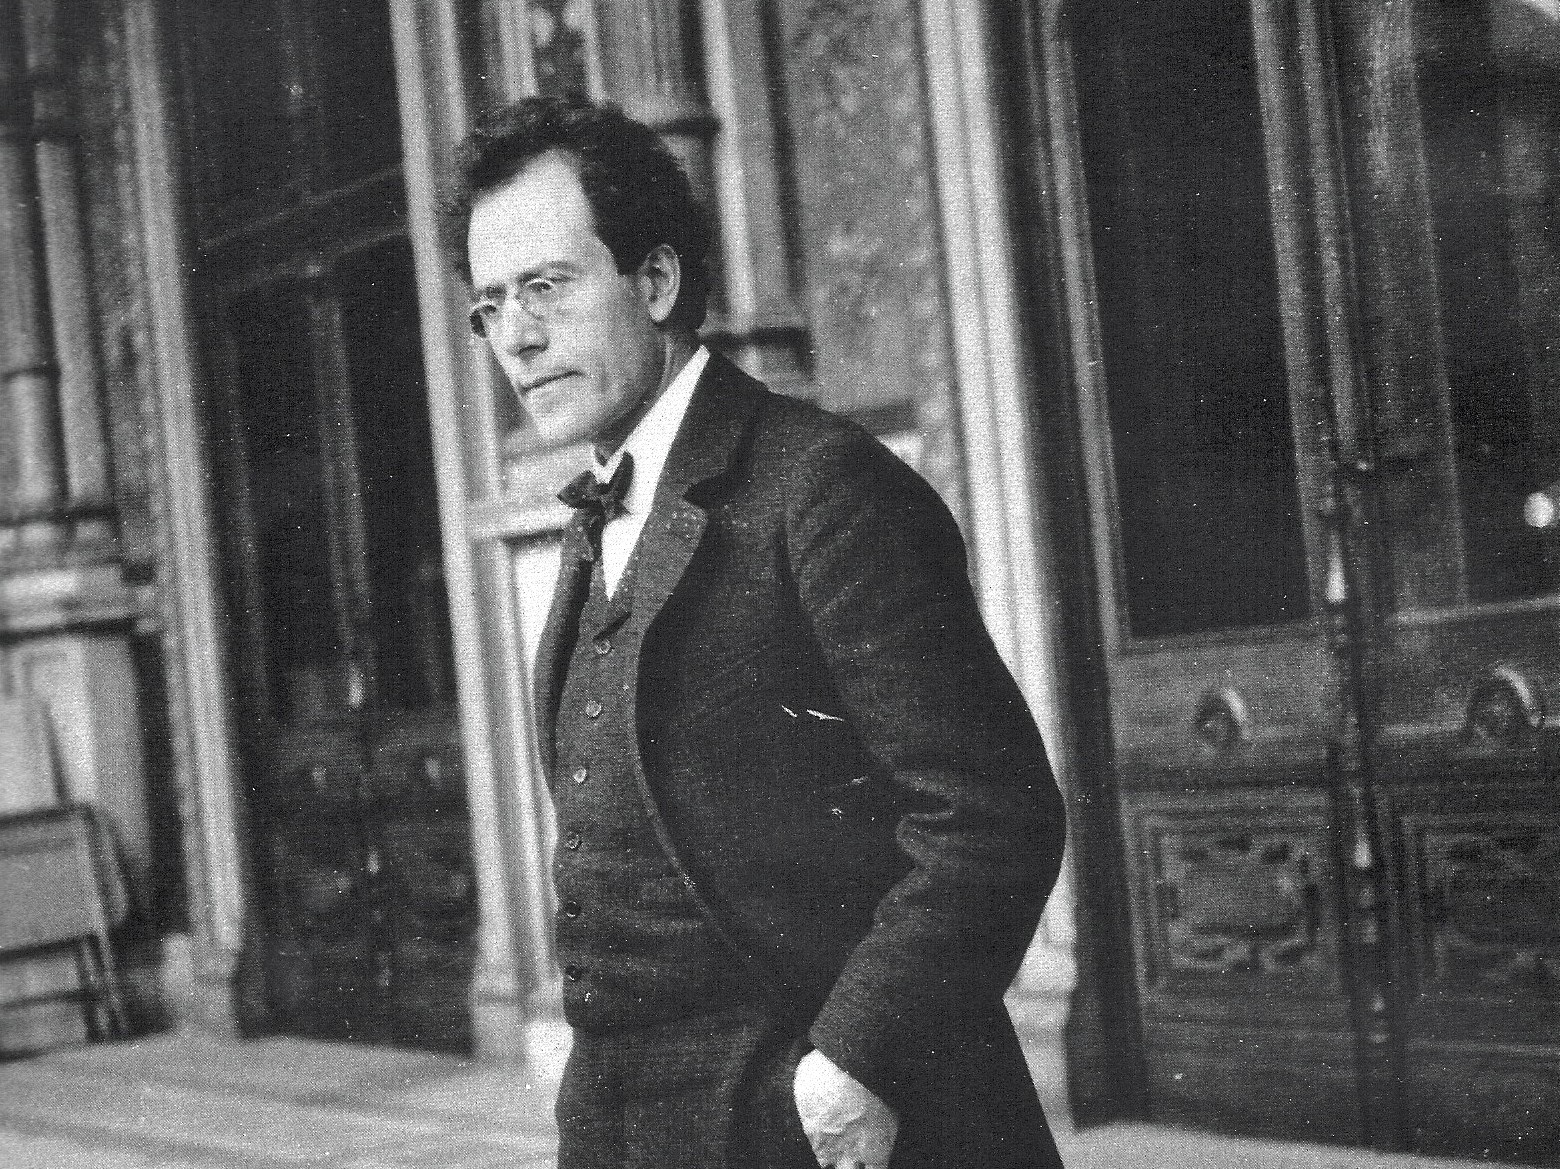 The full force of Mahler